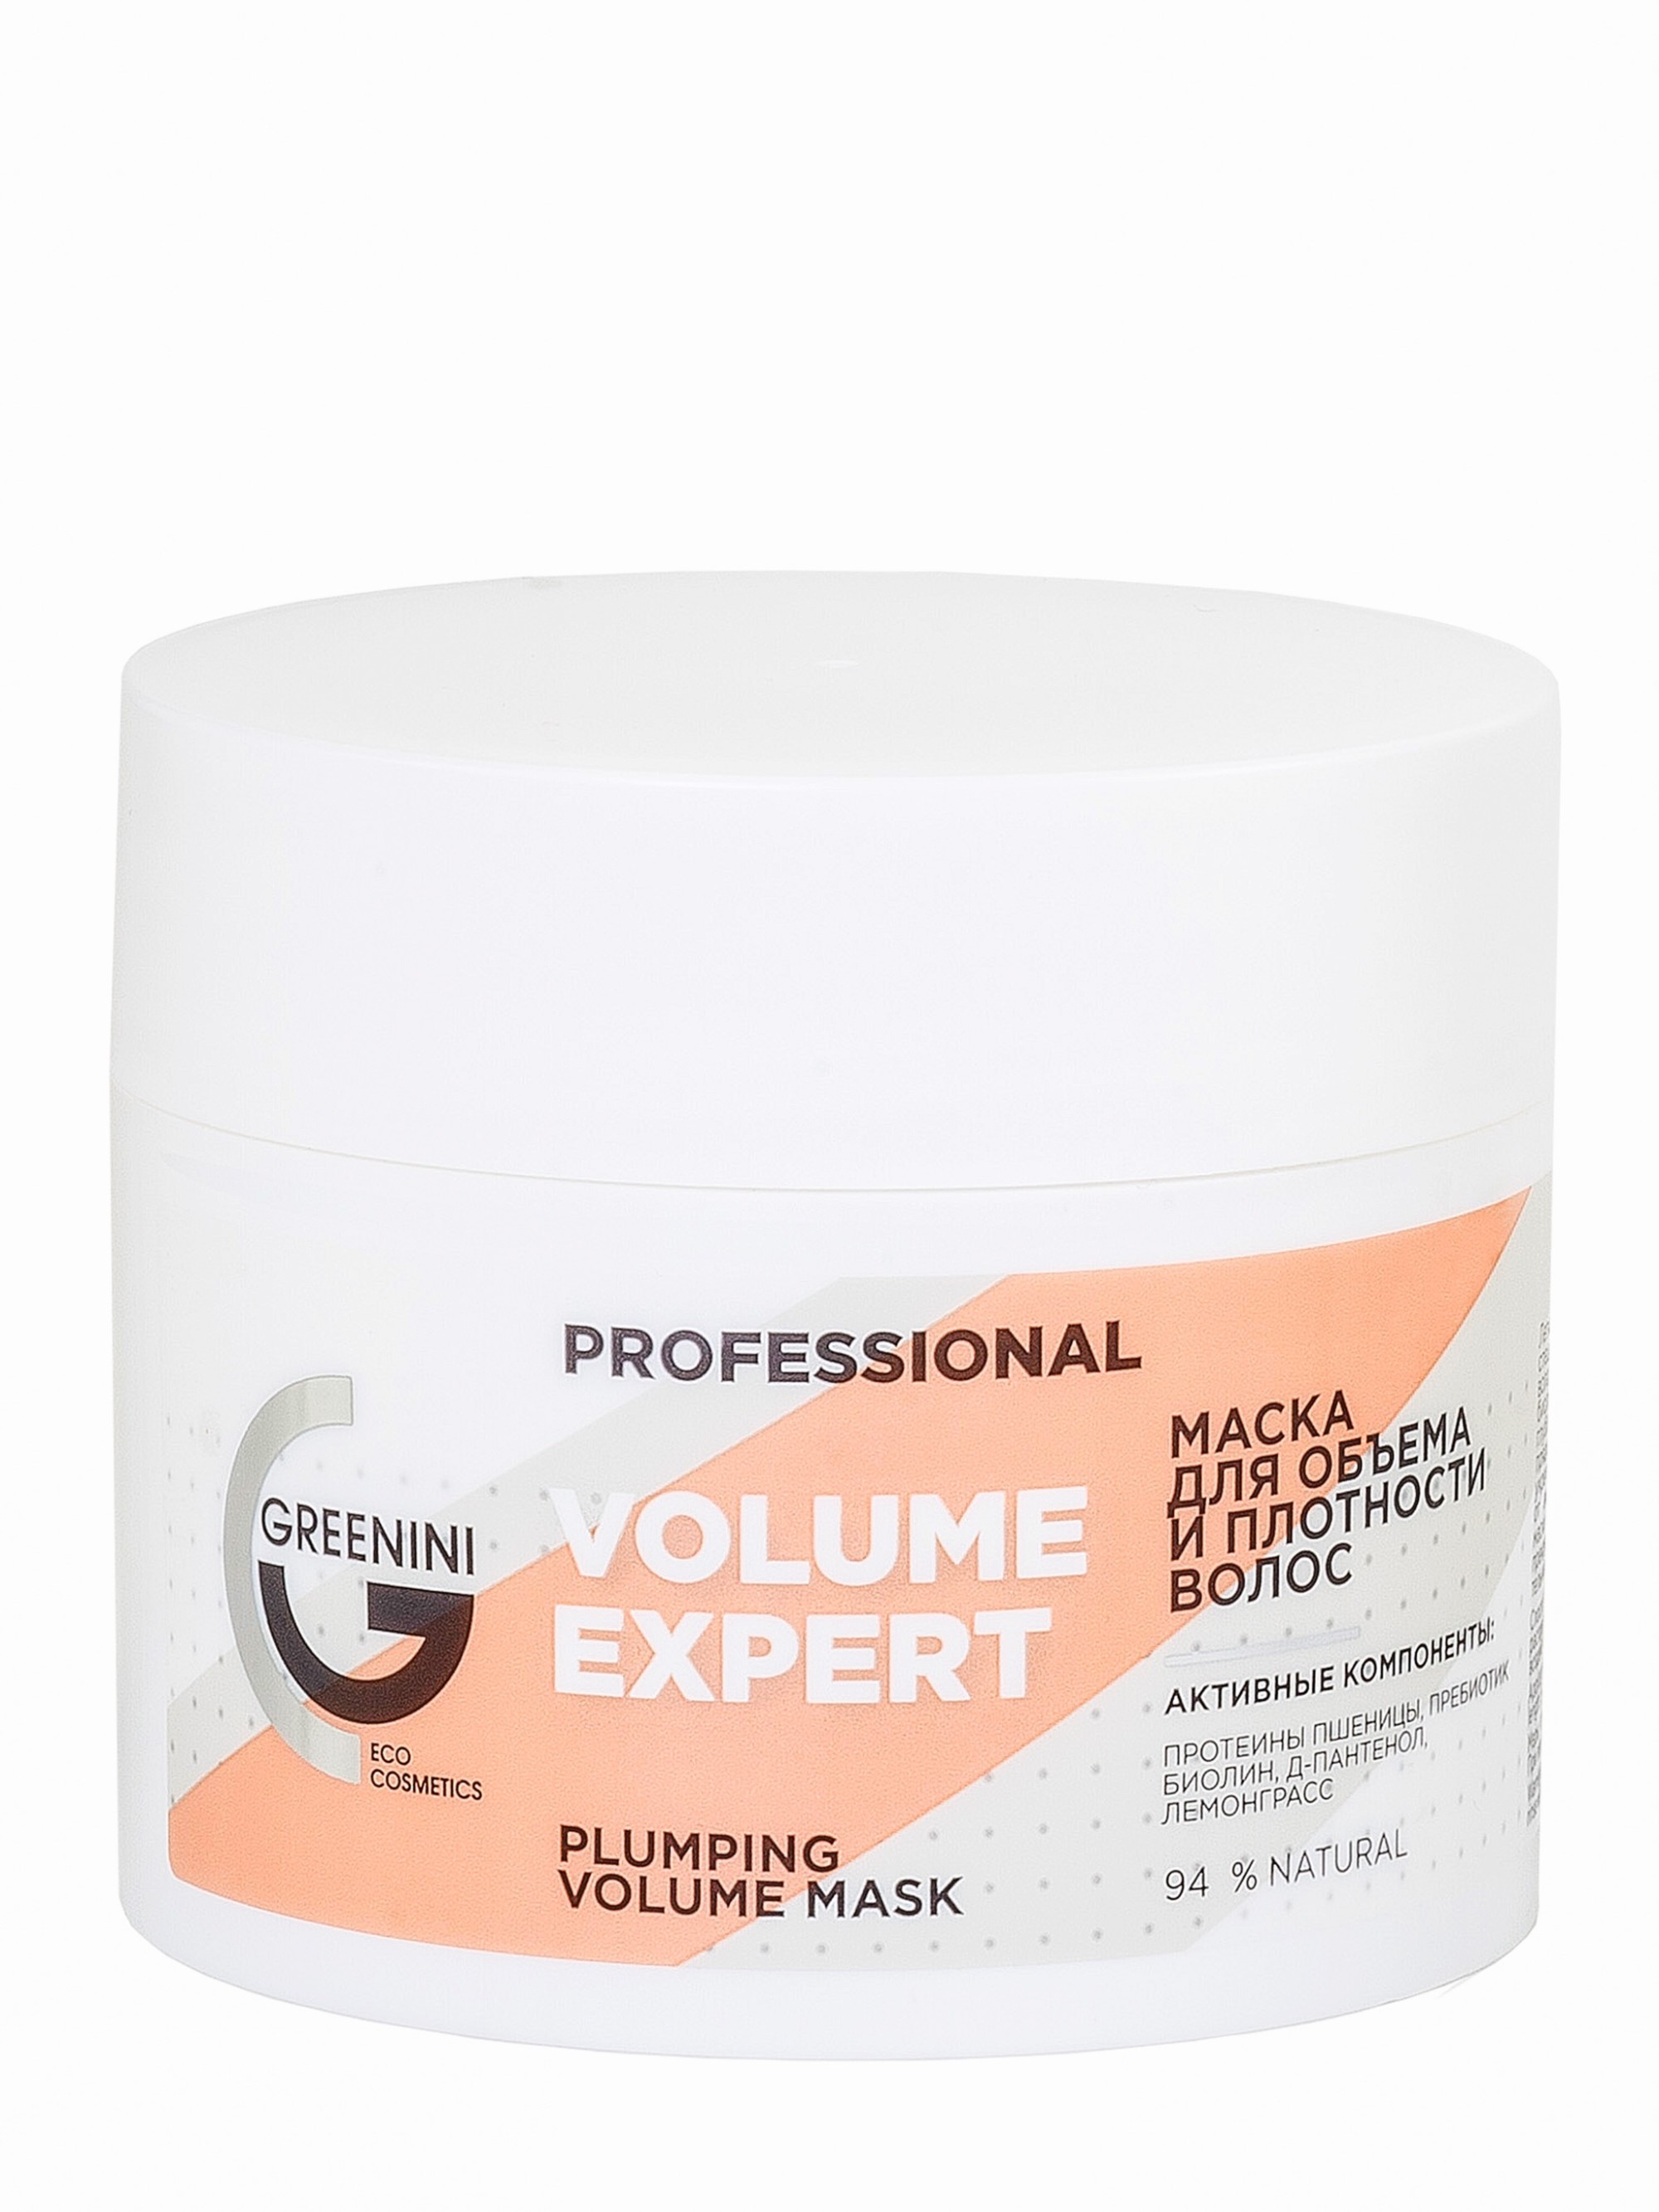 Купить Маска для объема и плотности волос Greenini Volume Expert, 230 мл